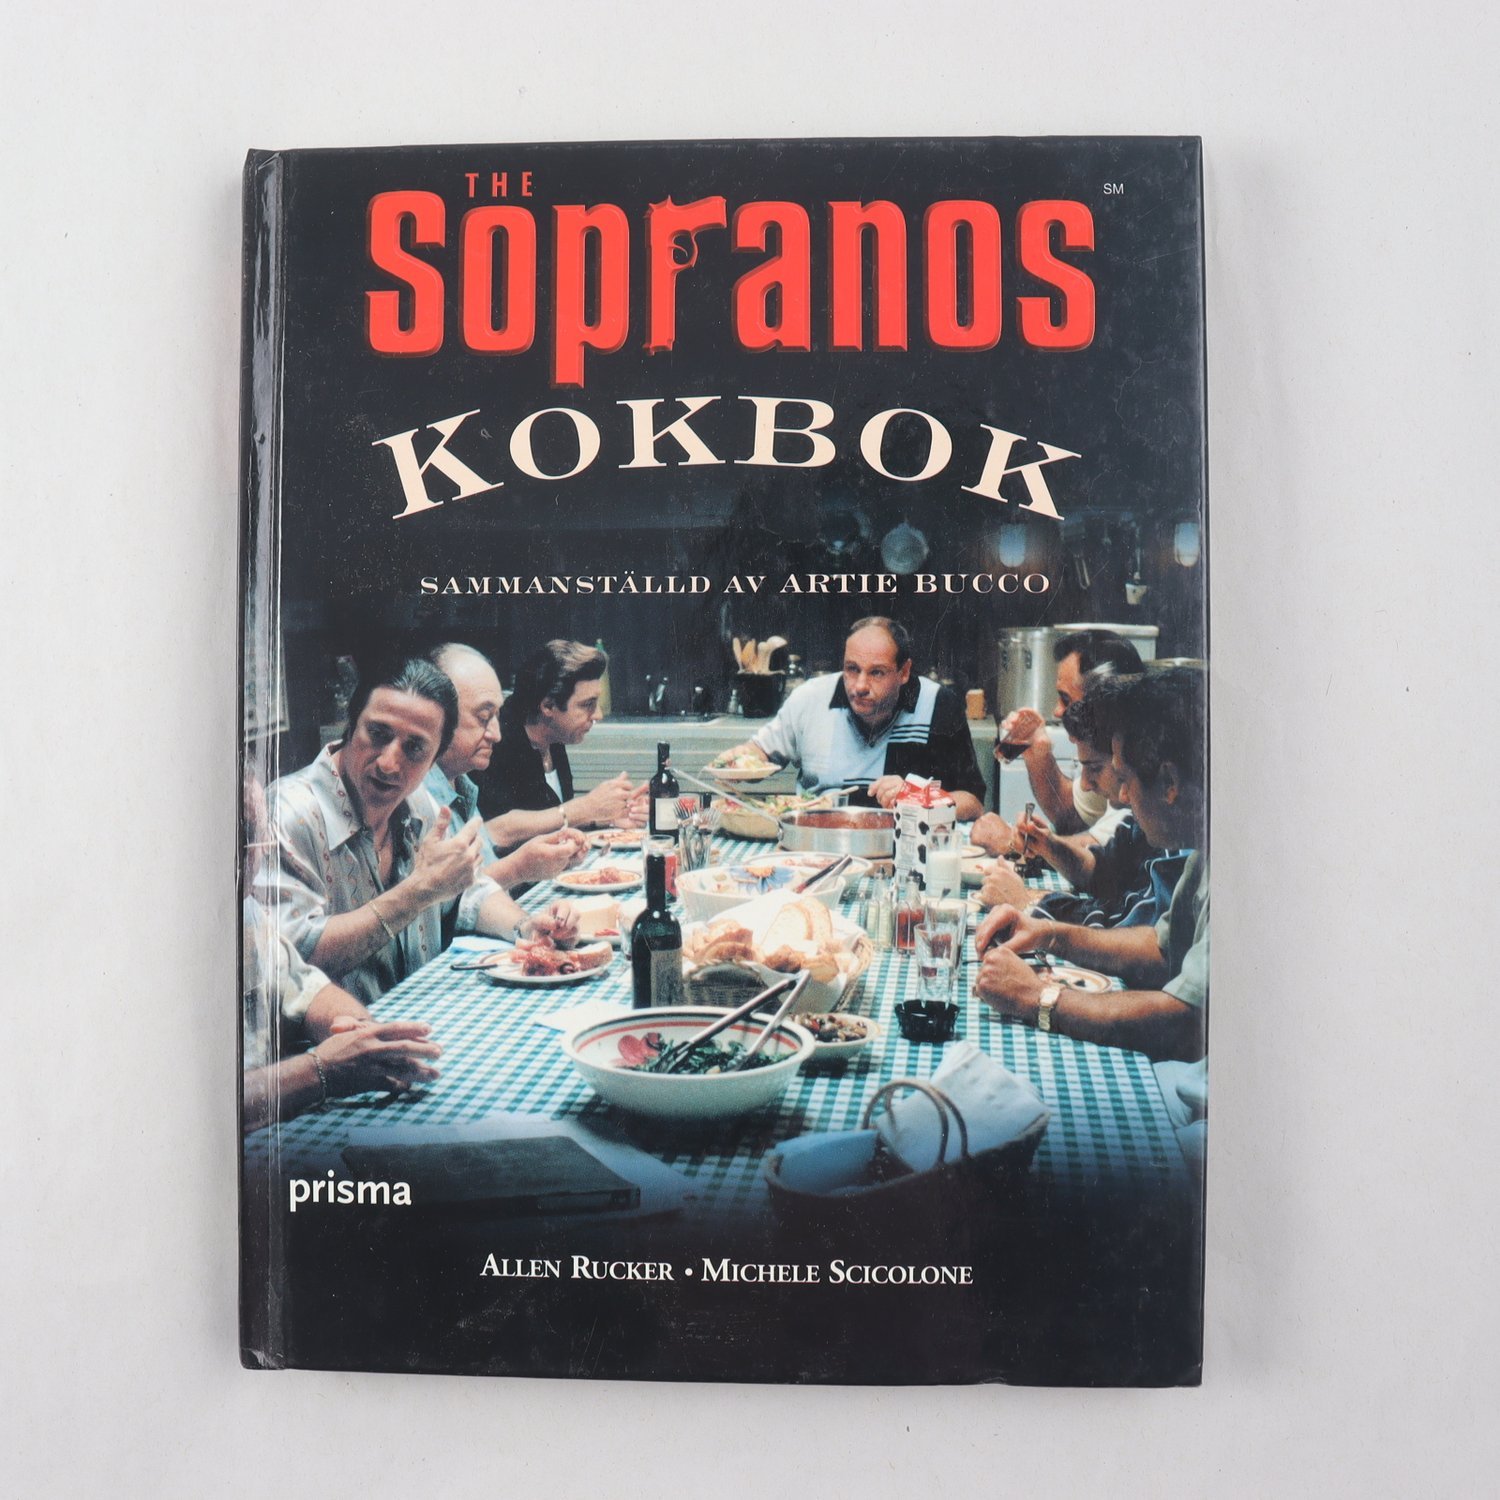 The Sopranos kokbok, sammanställd av Artie Bucco